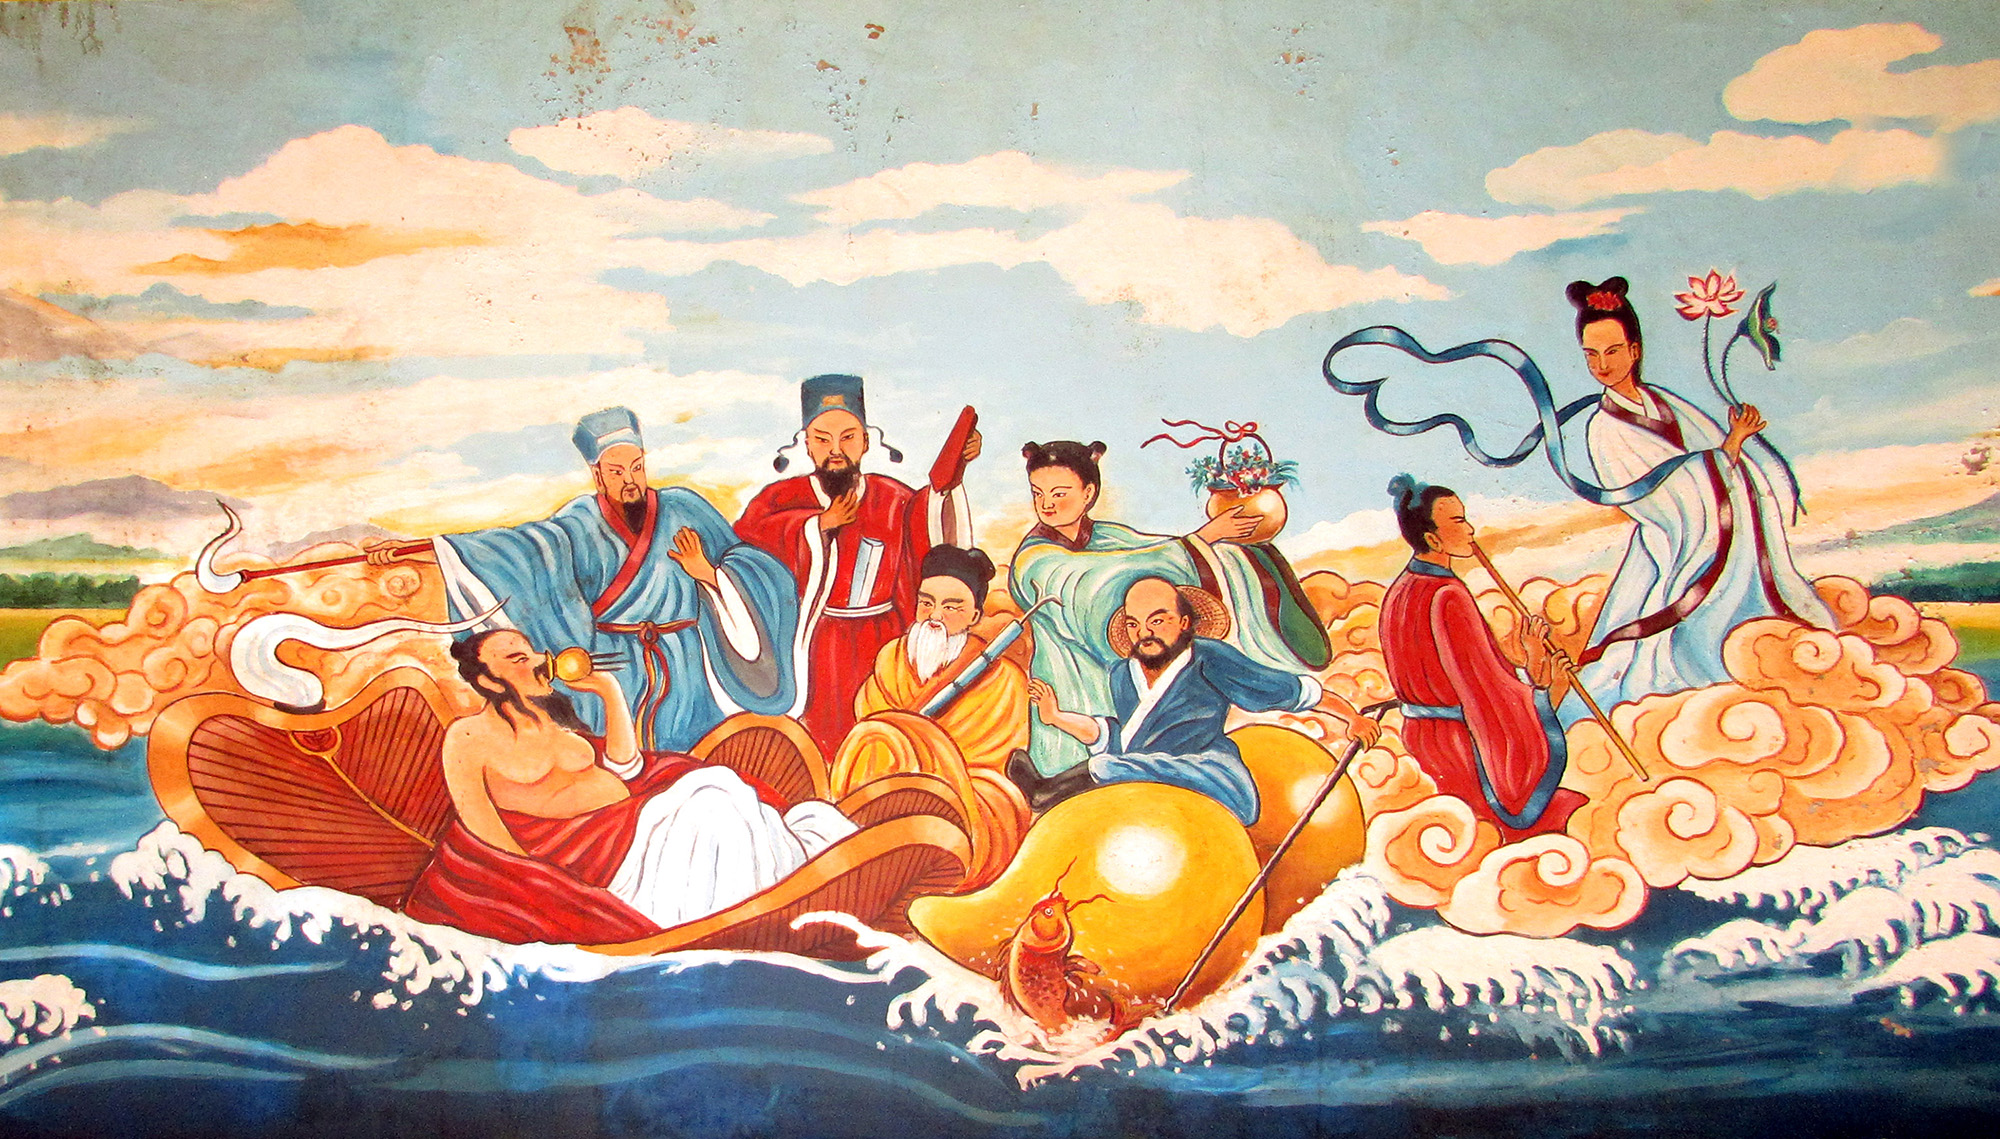 拿篤觀音慈航廟八仙過海壁畫